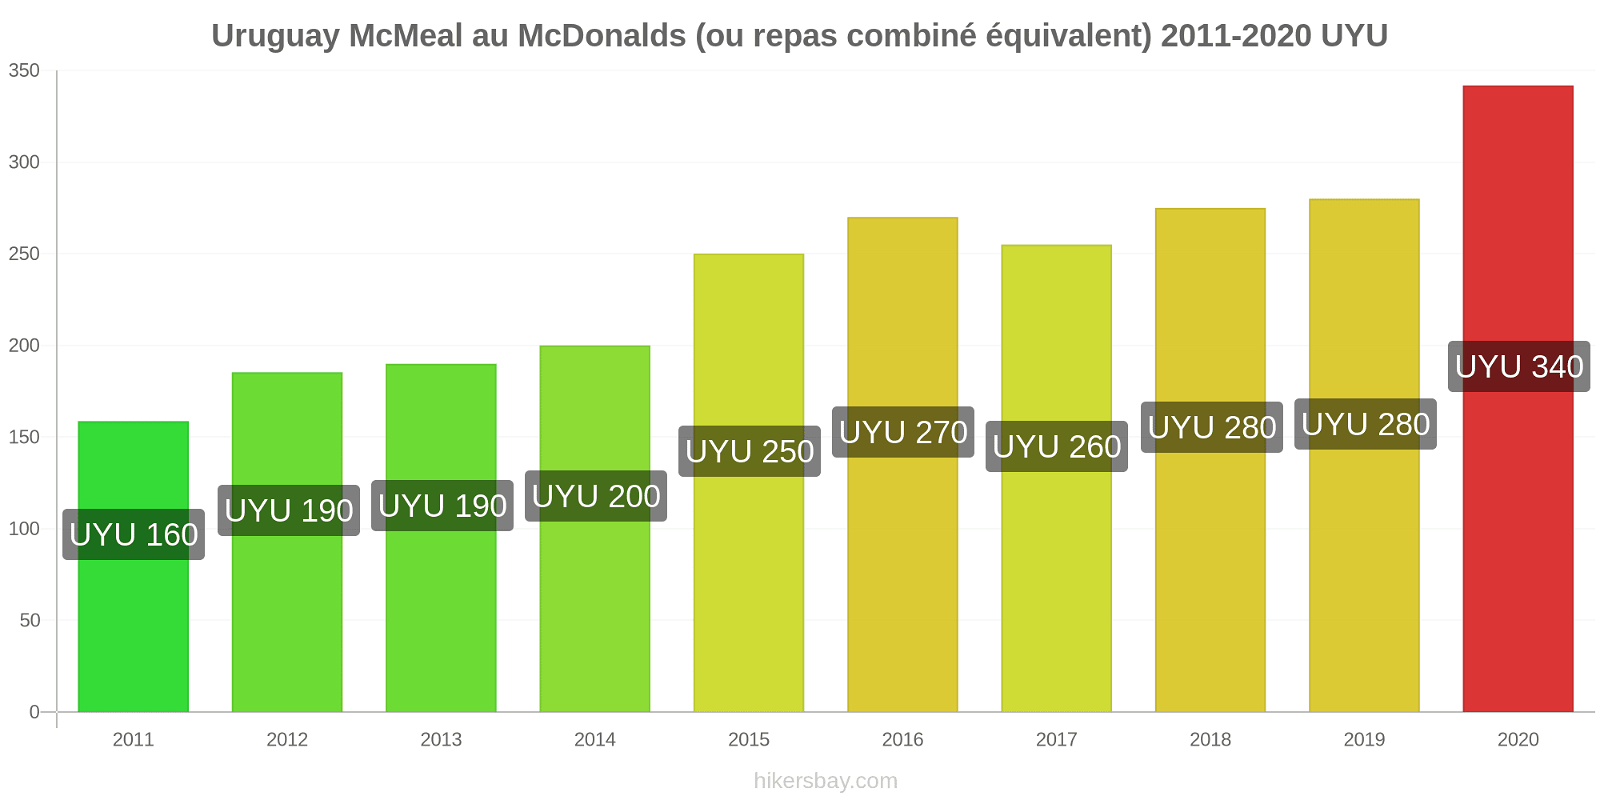 Uruguay changements de prix McMeal à McDonald ' s (ou Combo équivalent tourteau) hikersbay.com